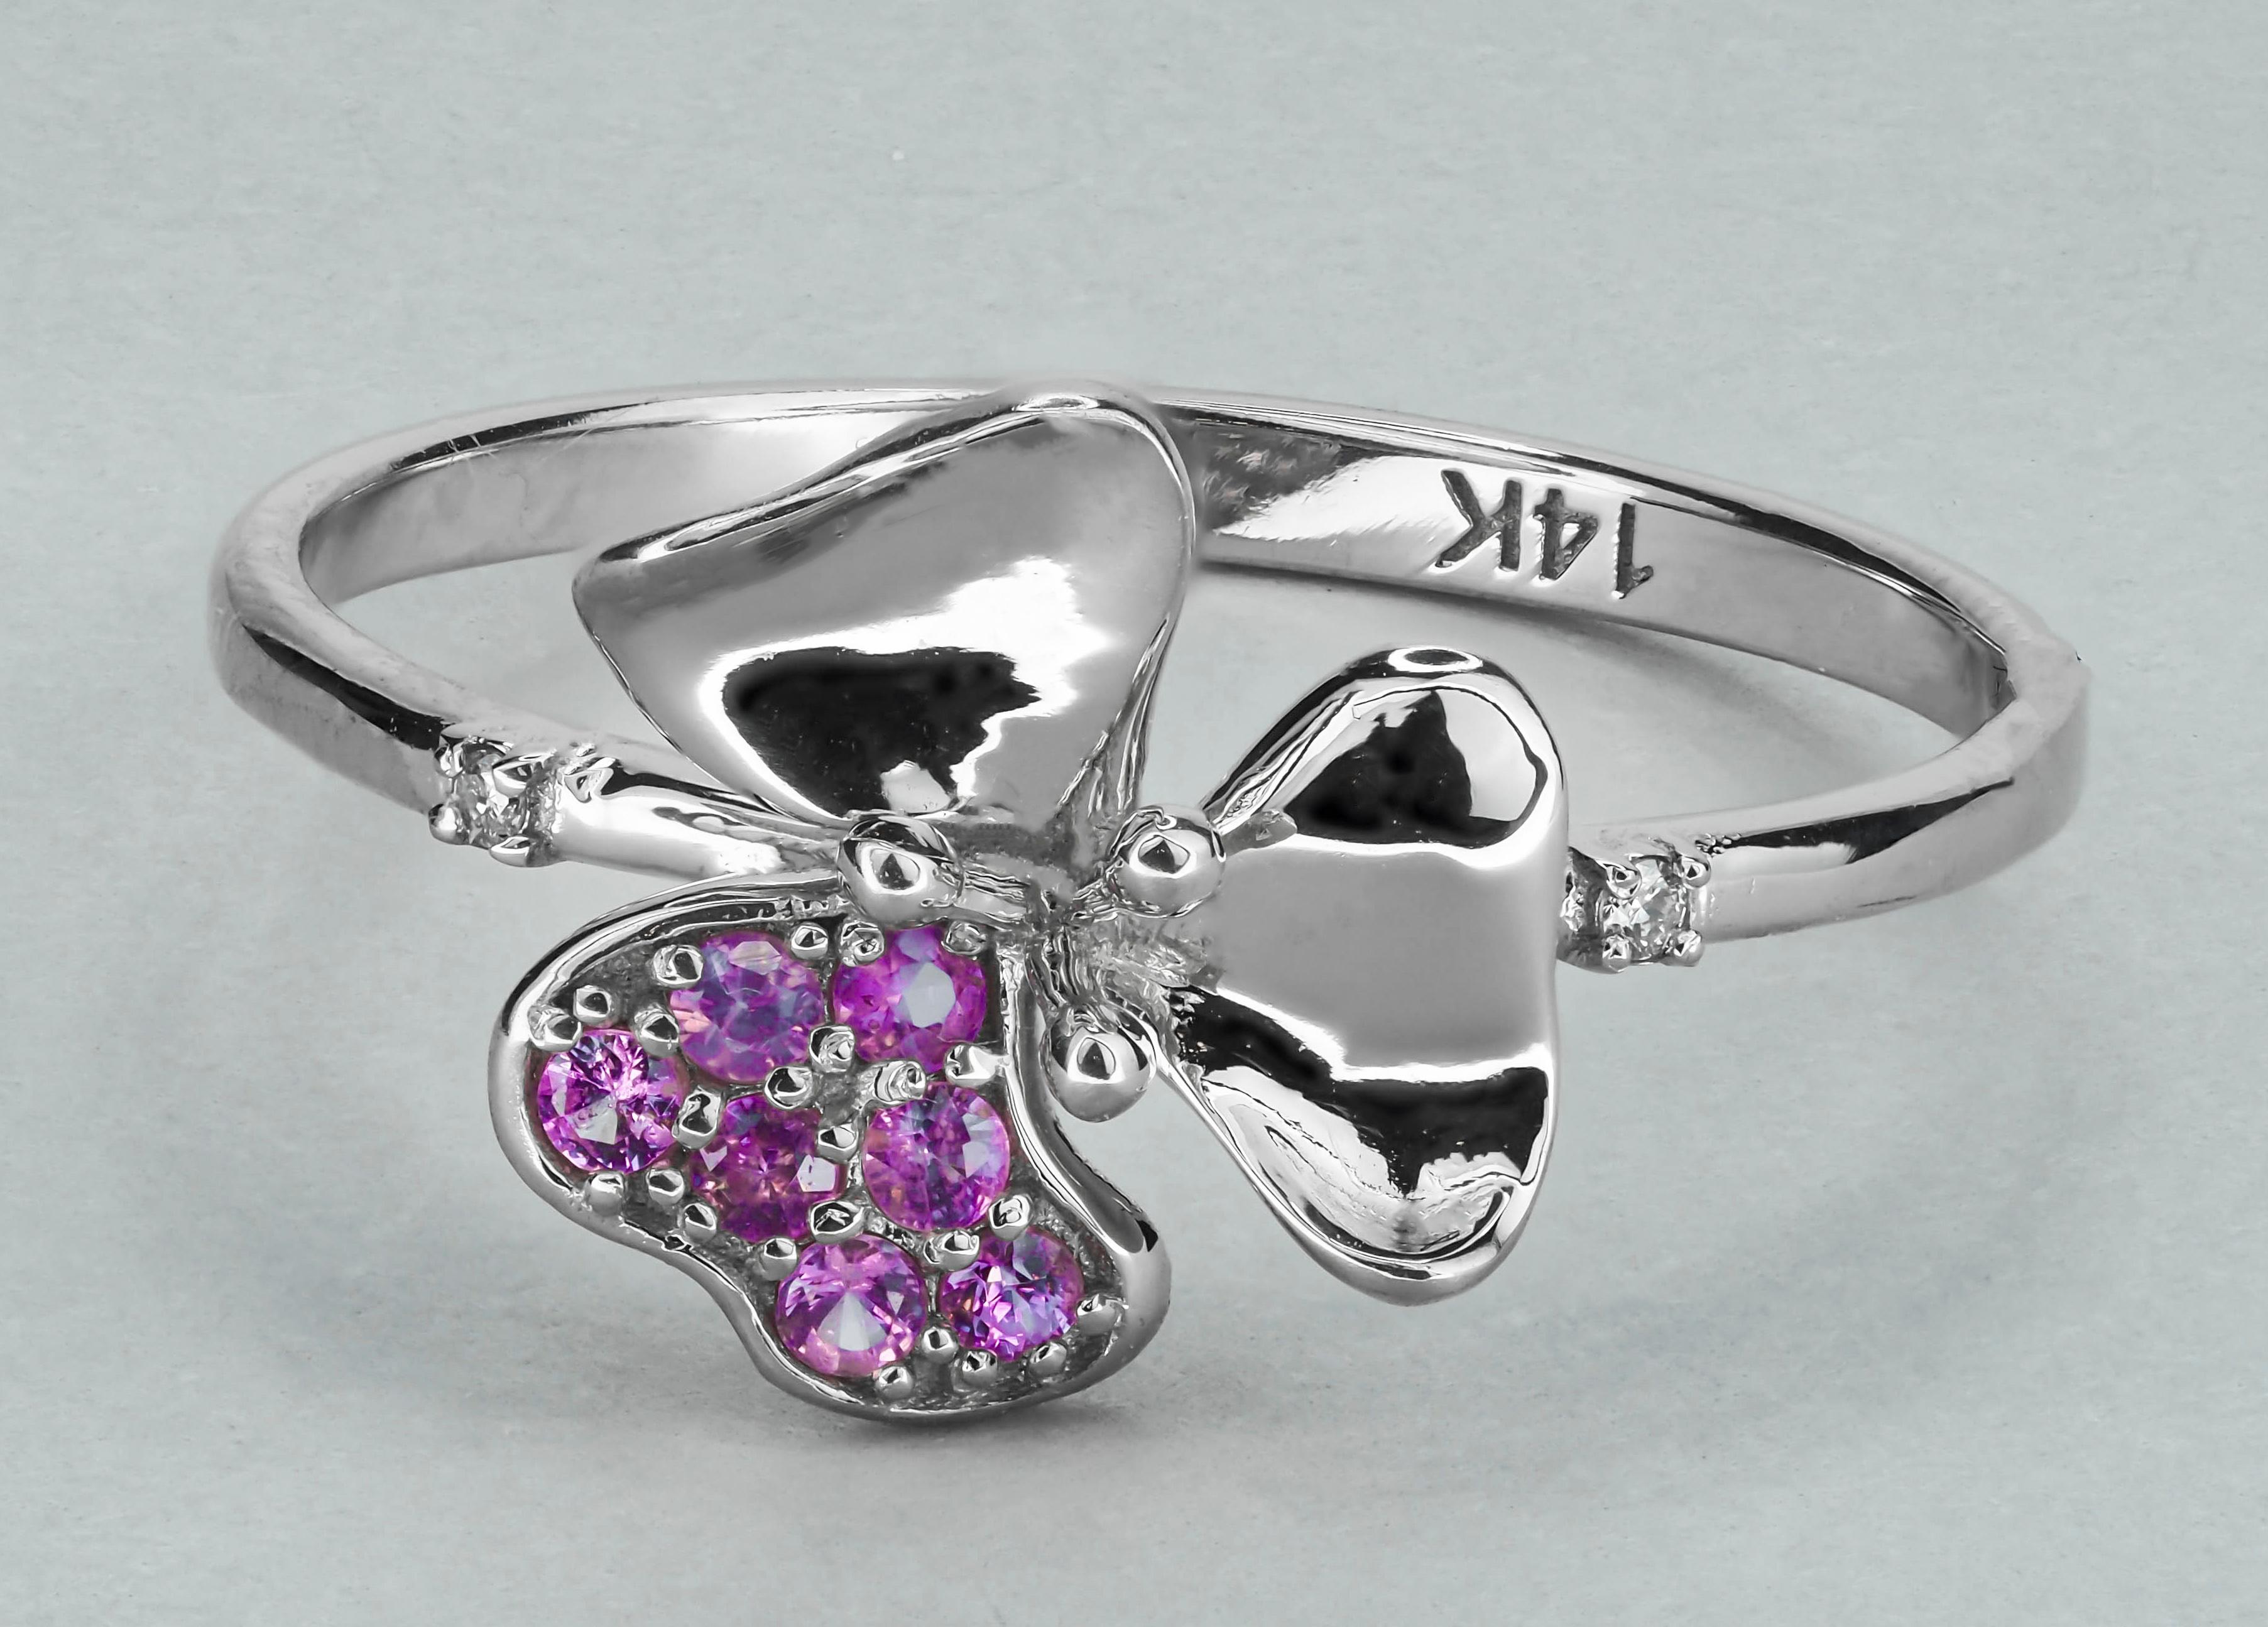 For Sale:  3 petal Flower 14k ring with gemstones. 4